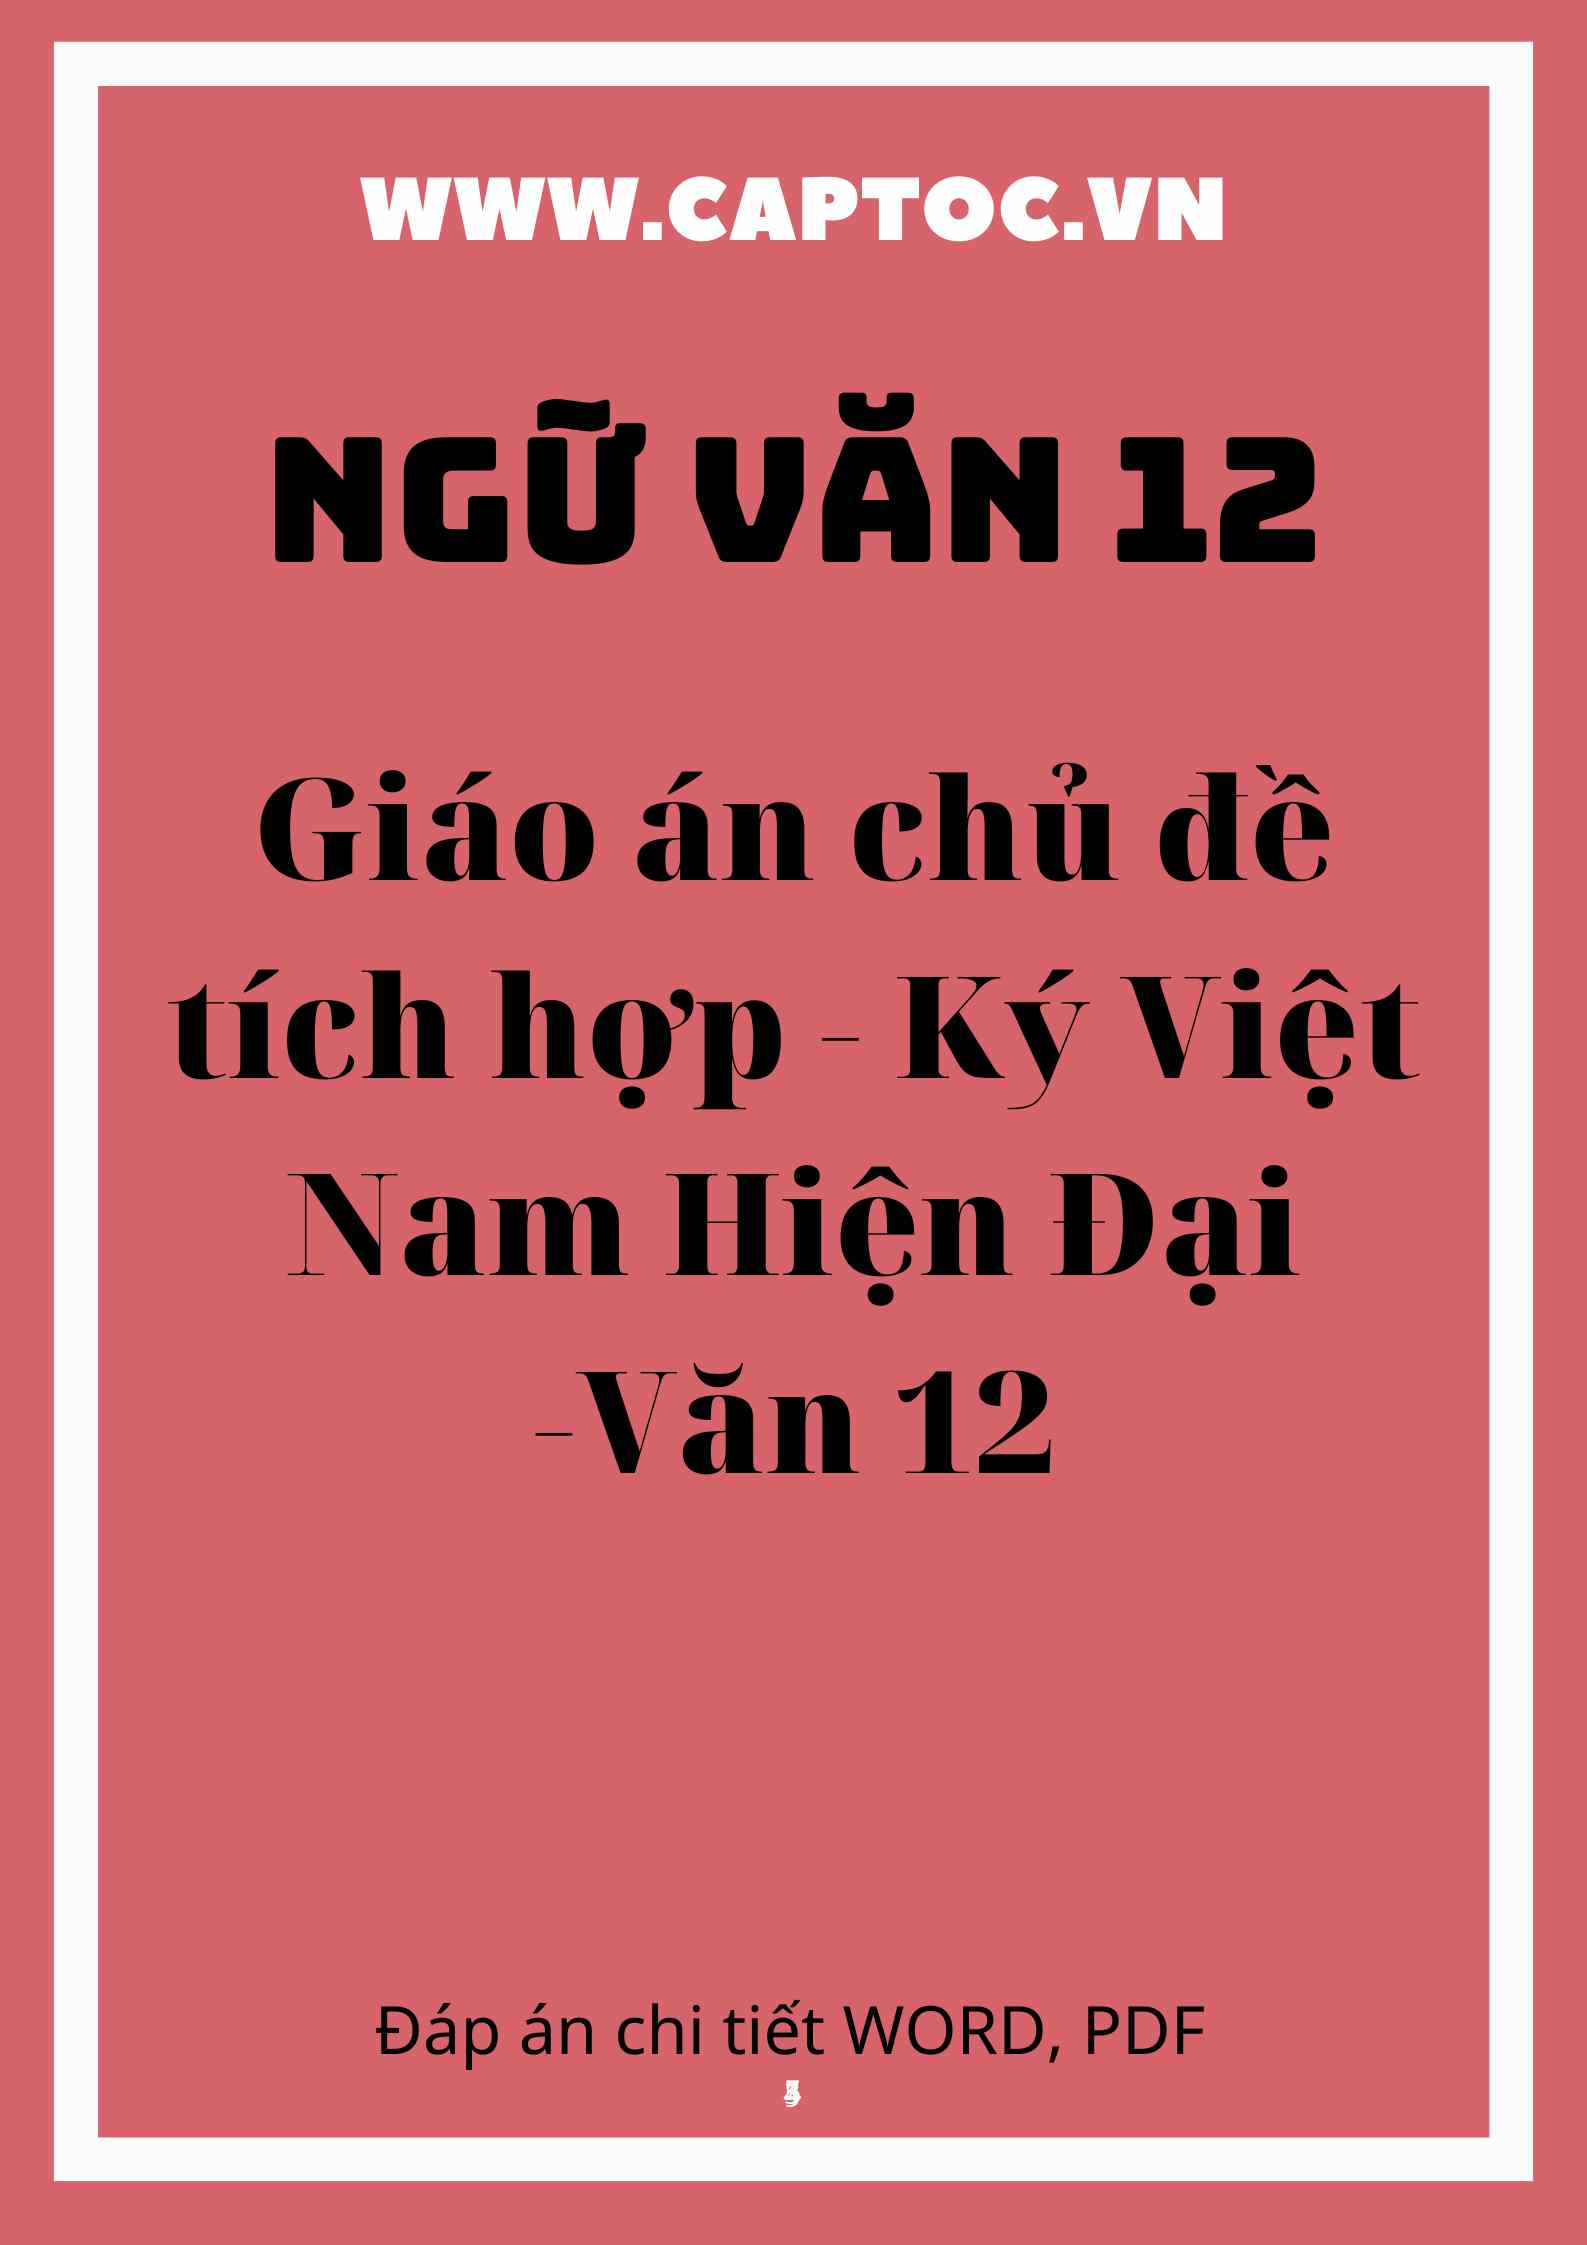 Giáo án chủ đề tích hợp - Ký Việt Nam Hiện Đại -Văn 12